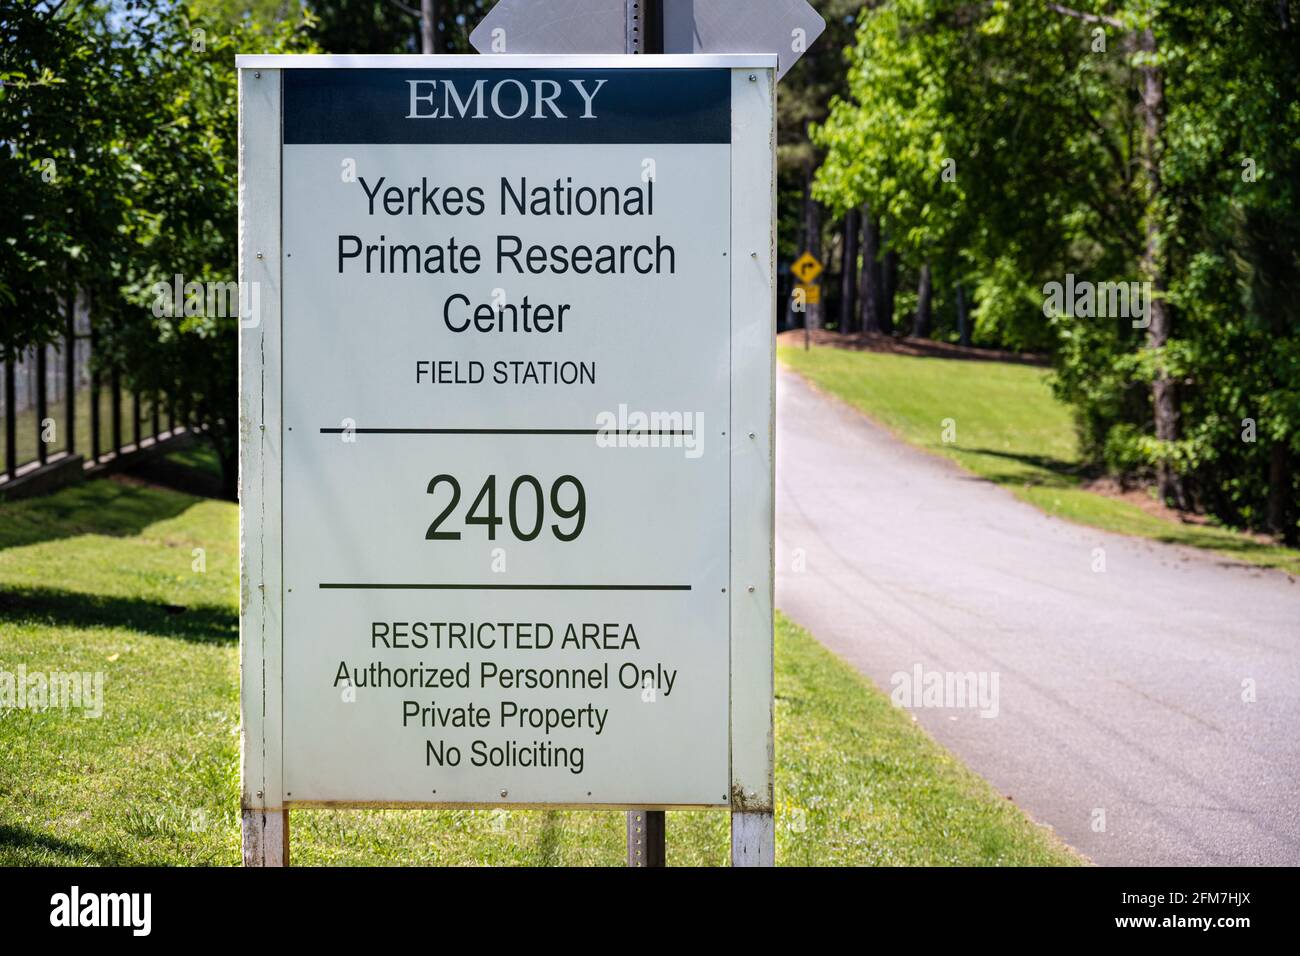 Yerkes National Primate Research Center Field Station, propriété de l'Université Emory, à Lawrenceville (Metro Atlanta), Géorgie. (ÉTATS-UNIS) Banque D'Images